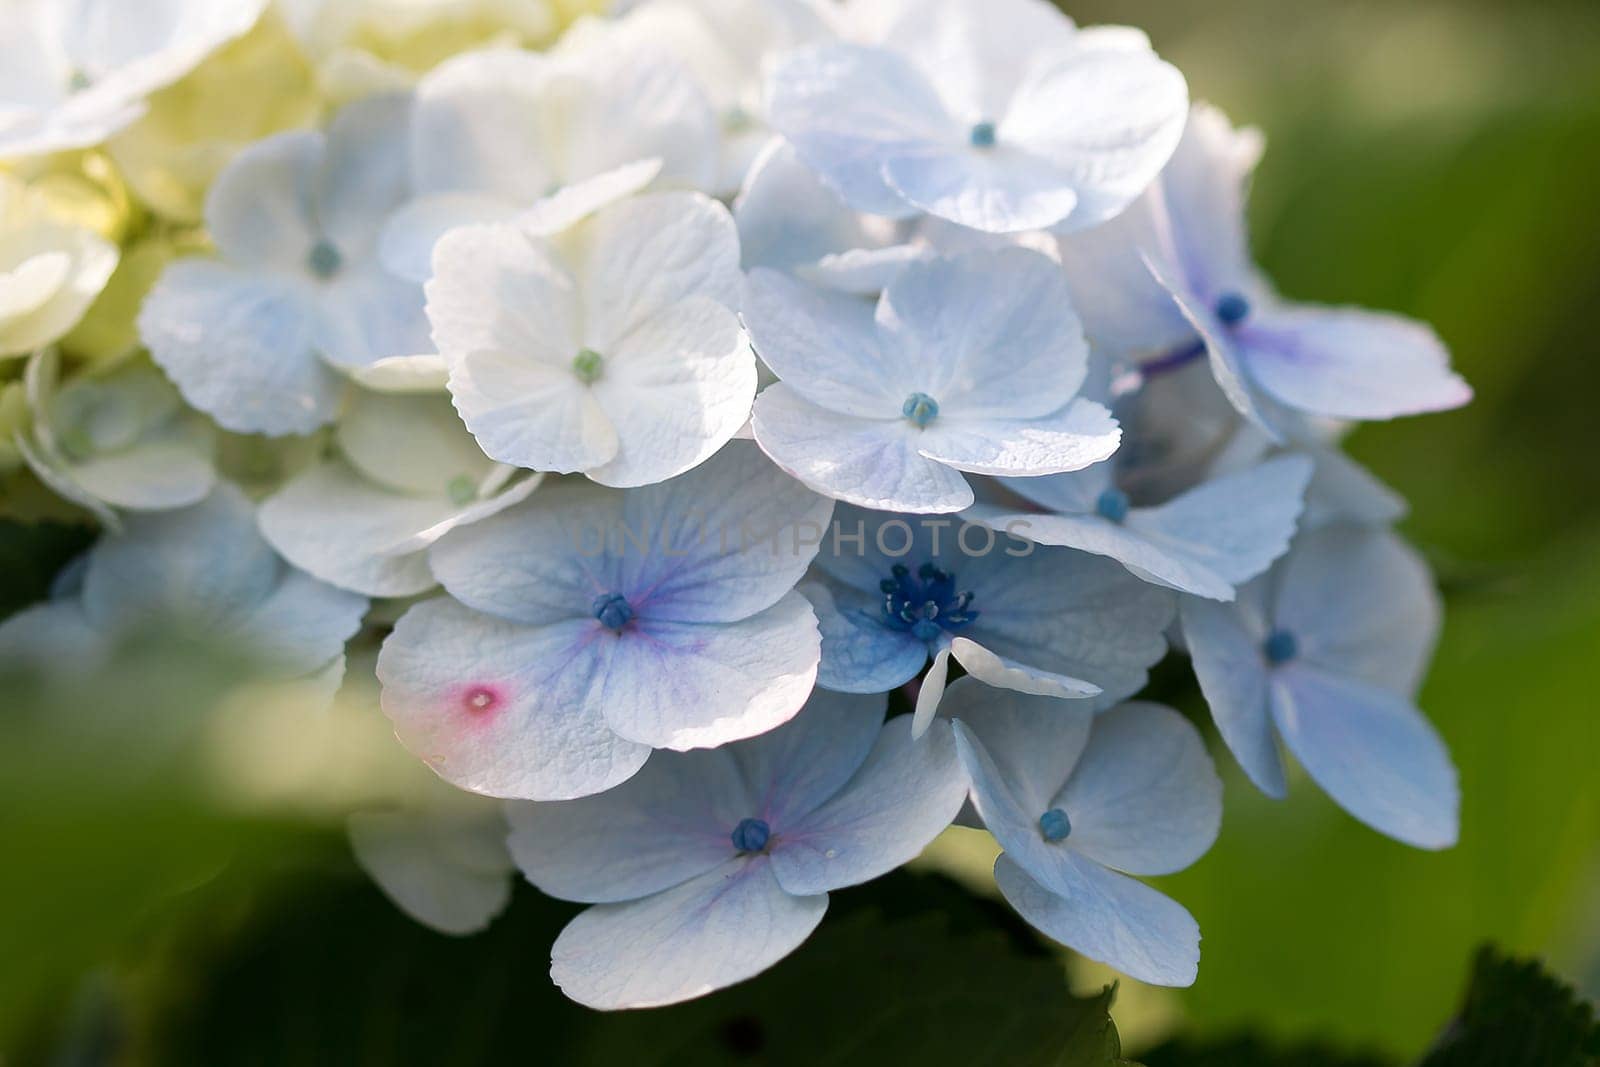 Hydrangea blue in the blooming garden by Puripatt